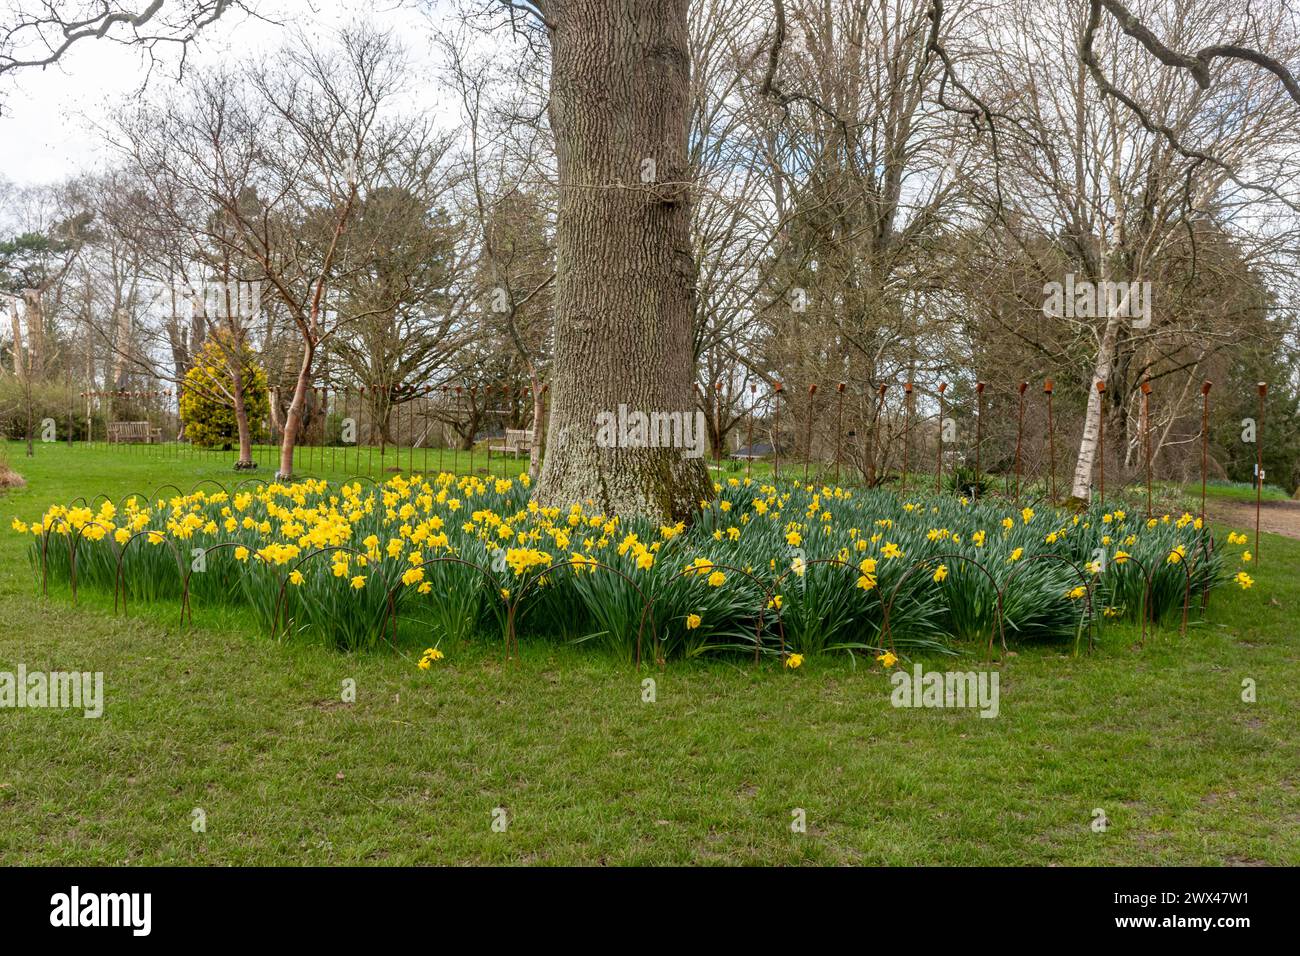 Narcisi piantati in cerchio intorno a un albero, fiori primaverili in un giardino, Regno Unito Foto Stock